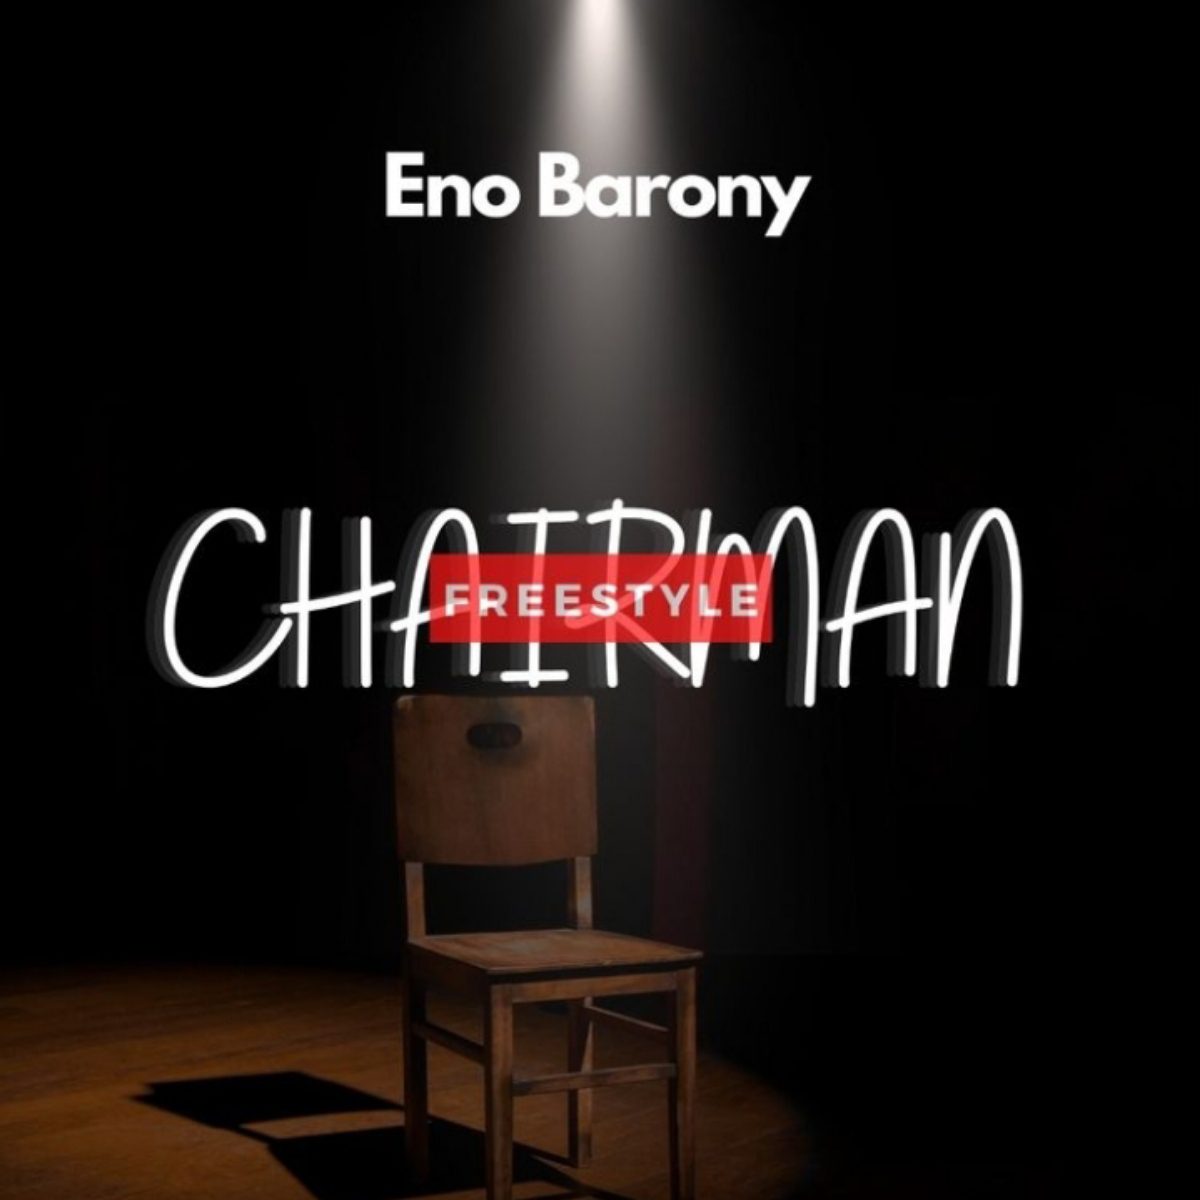 Eno Barony – Chairman (Freestyle) 